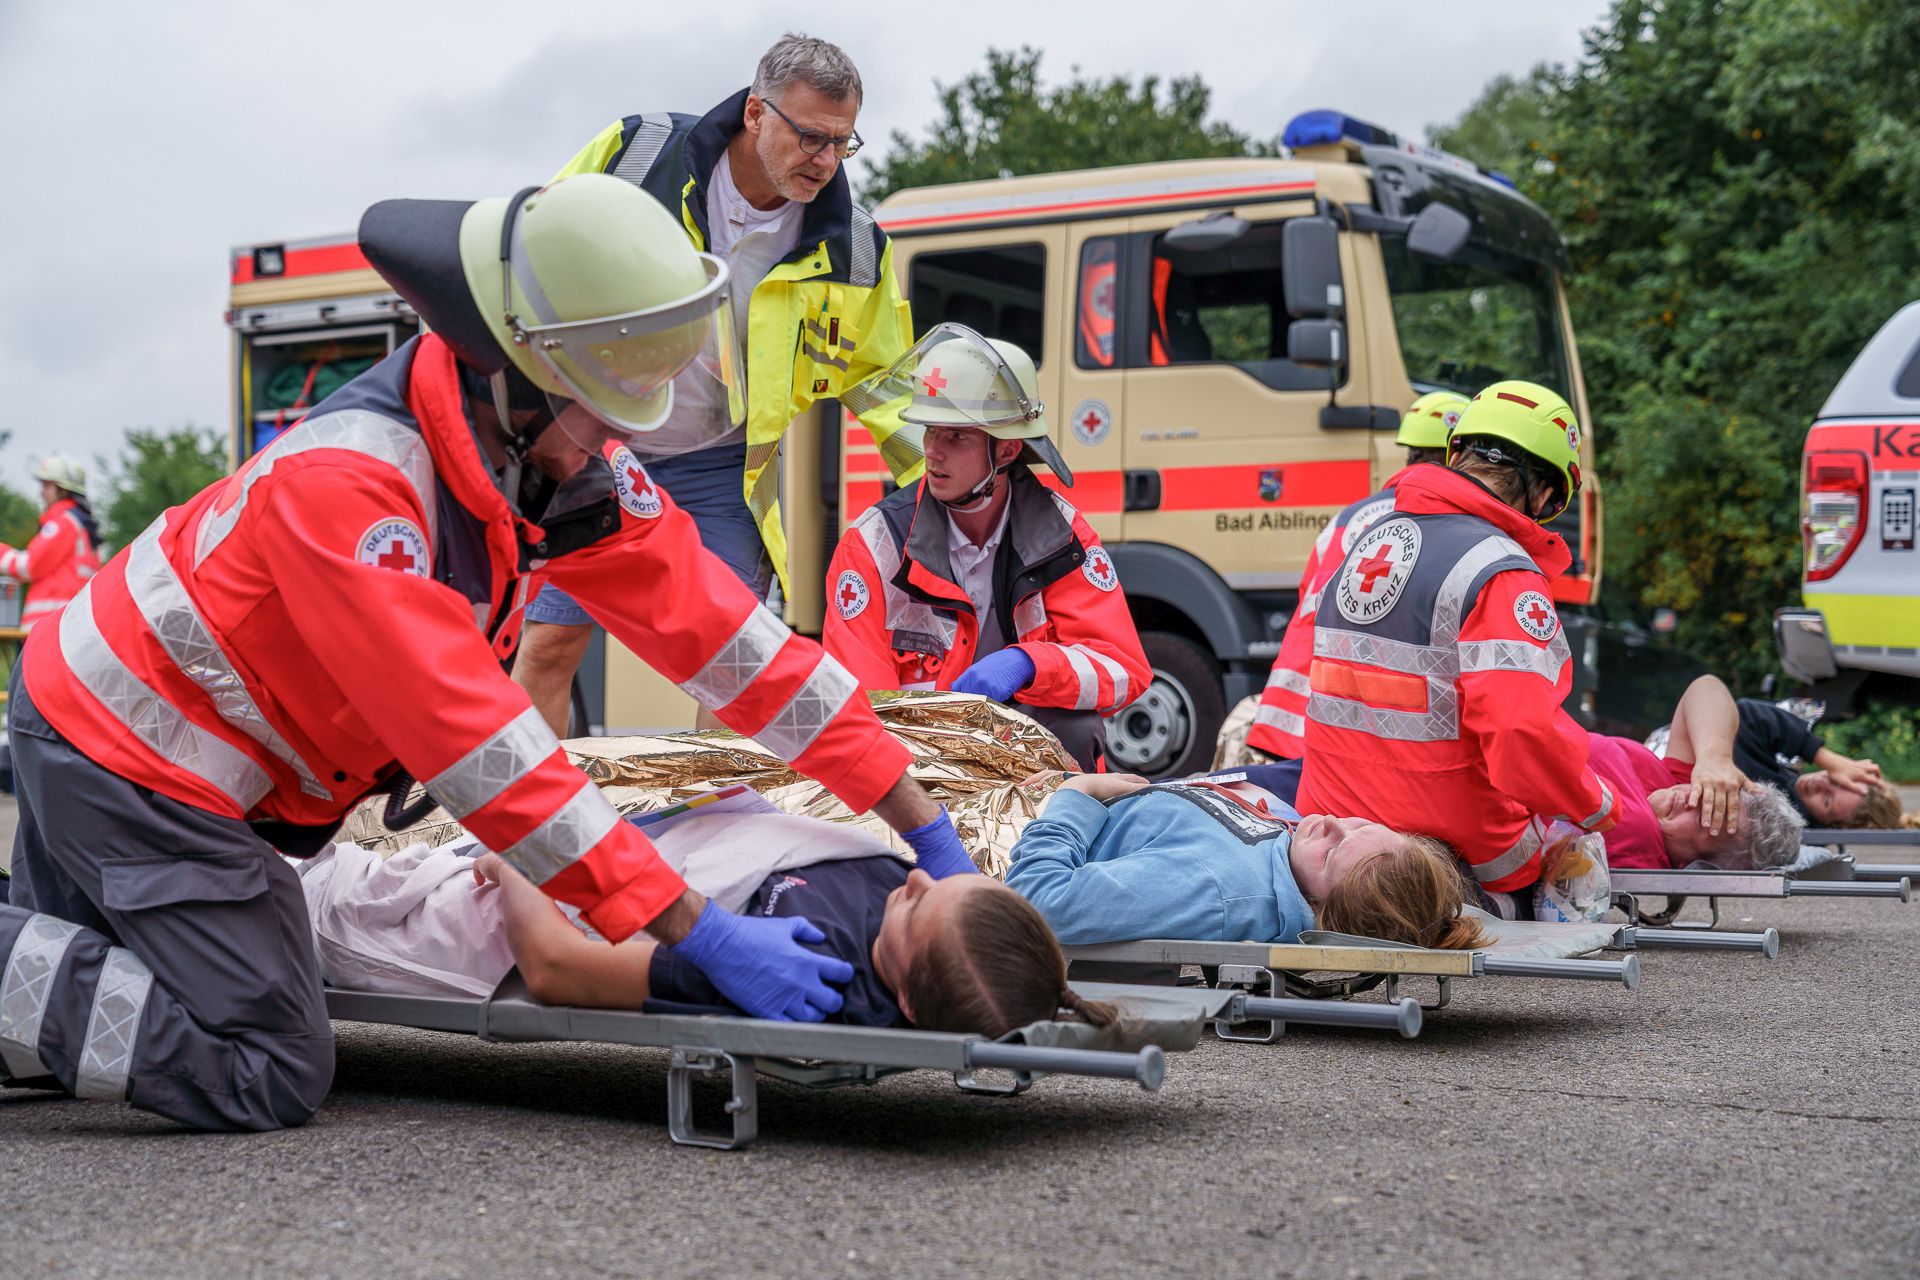 Übung für den Ernstfall - Verletzte werden versorgt. Foto: Ambulanz Rosenheim, Matthias Fischer